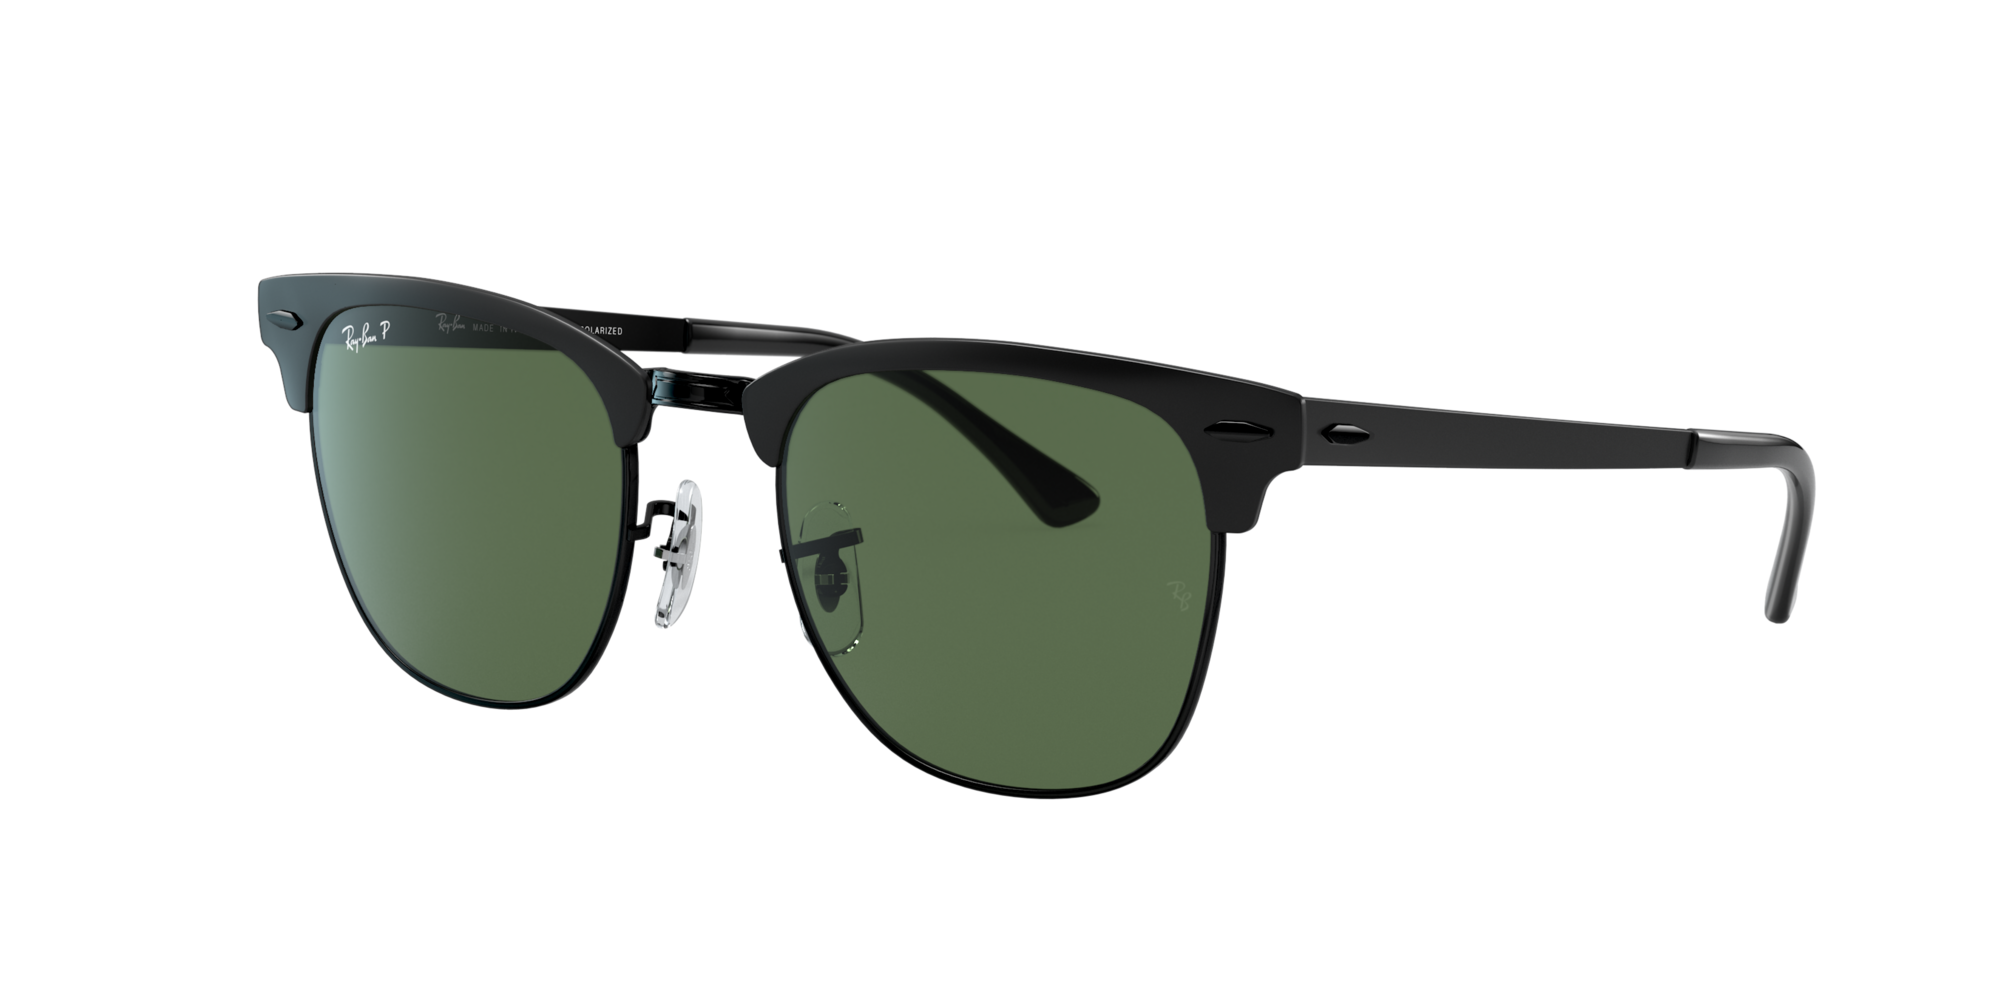 Sunglass Hut Online Store | Sunglasses for Women, Men & Kids